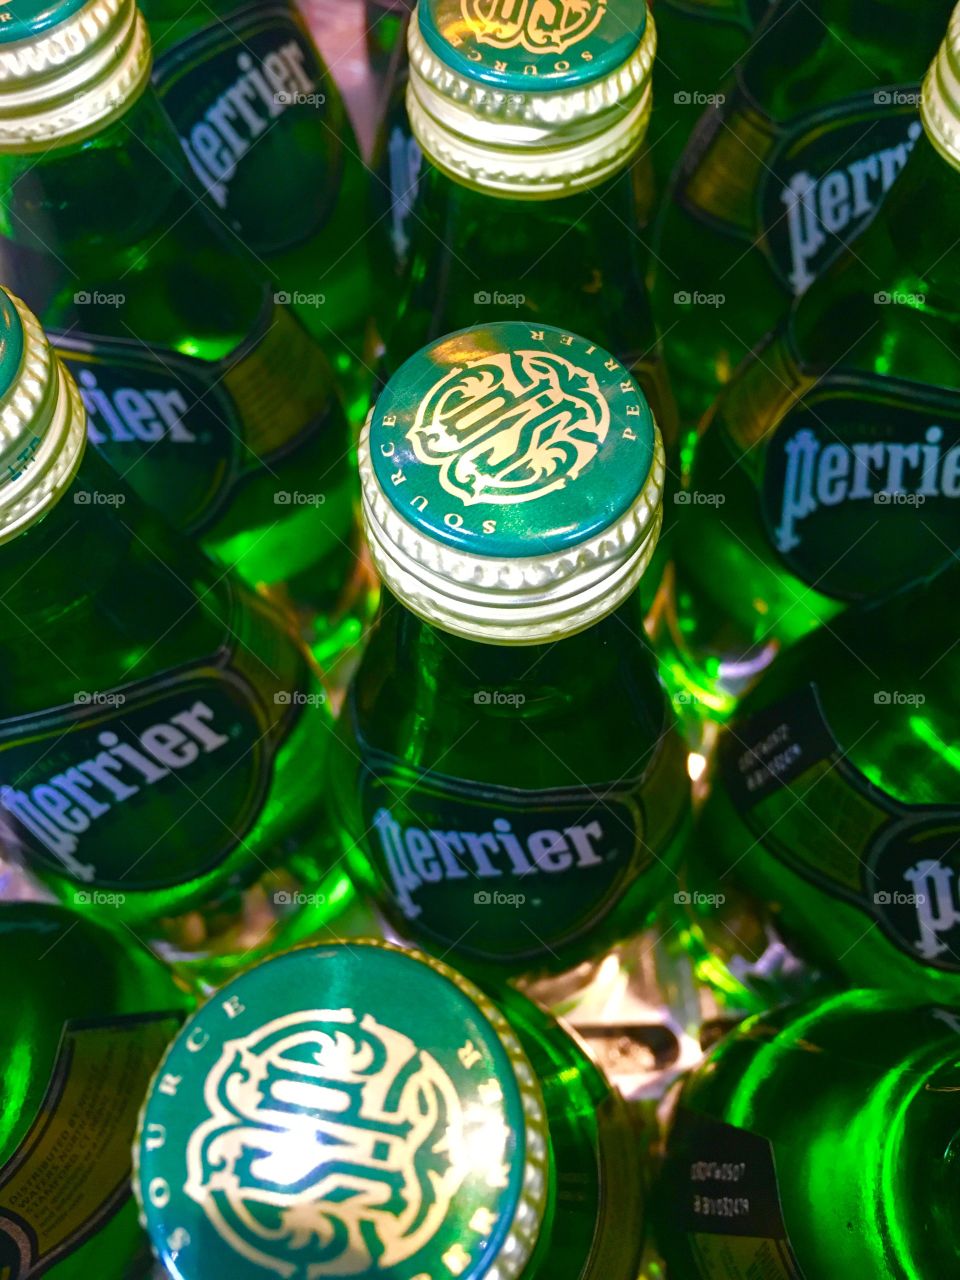 Perrier glass bottles